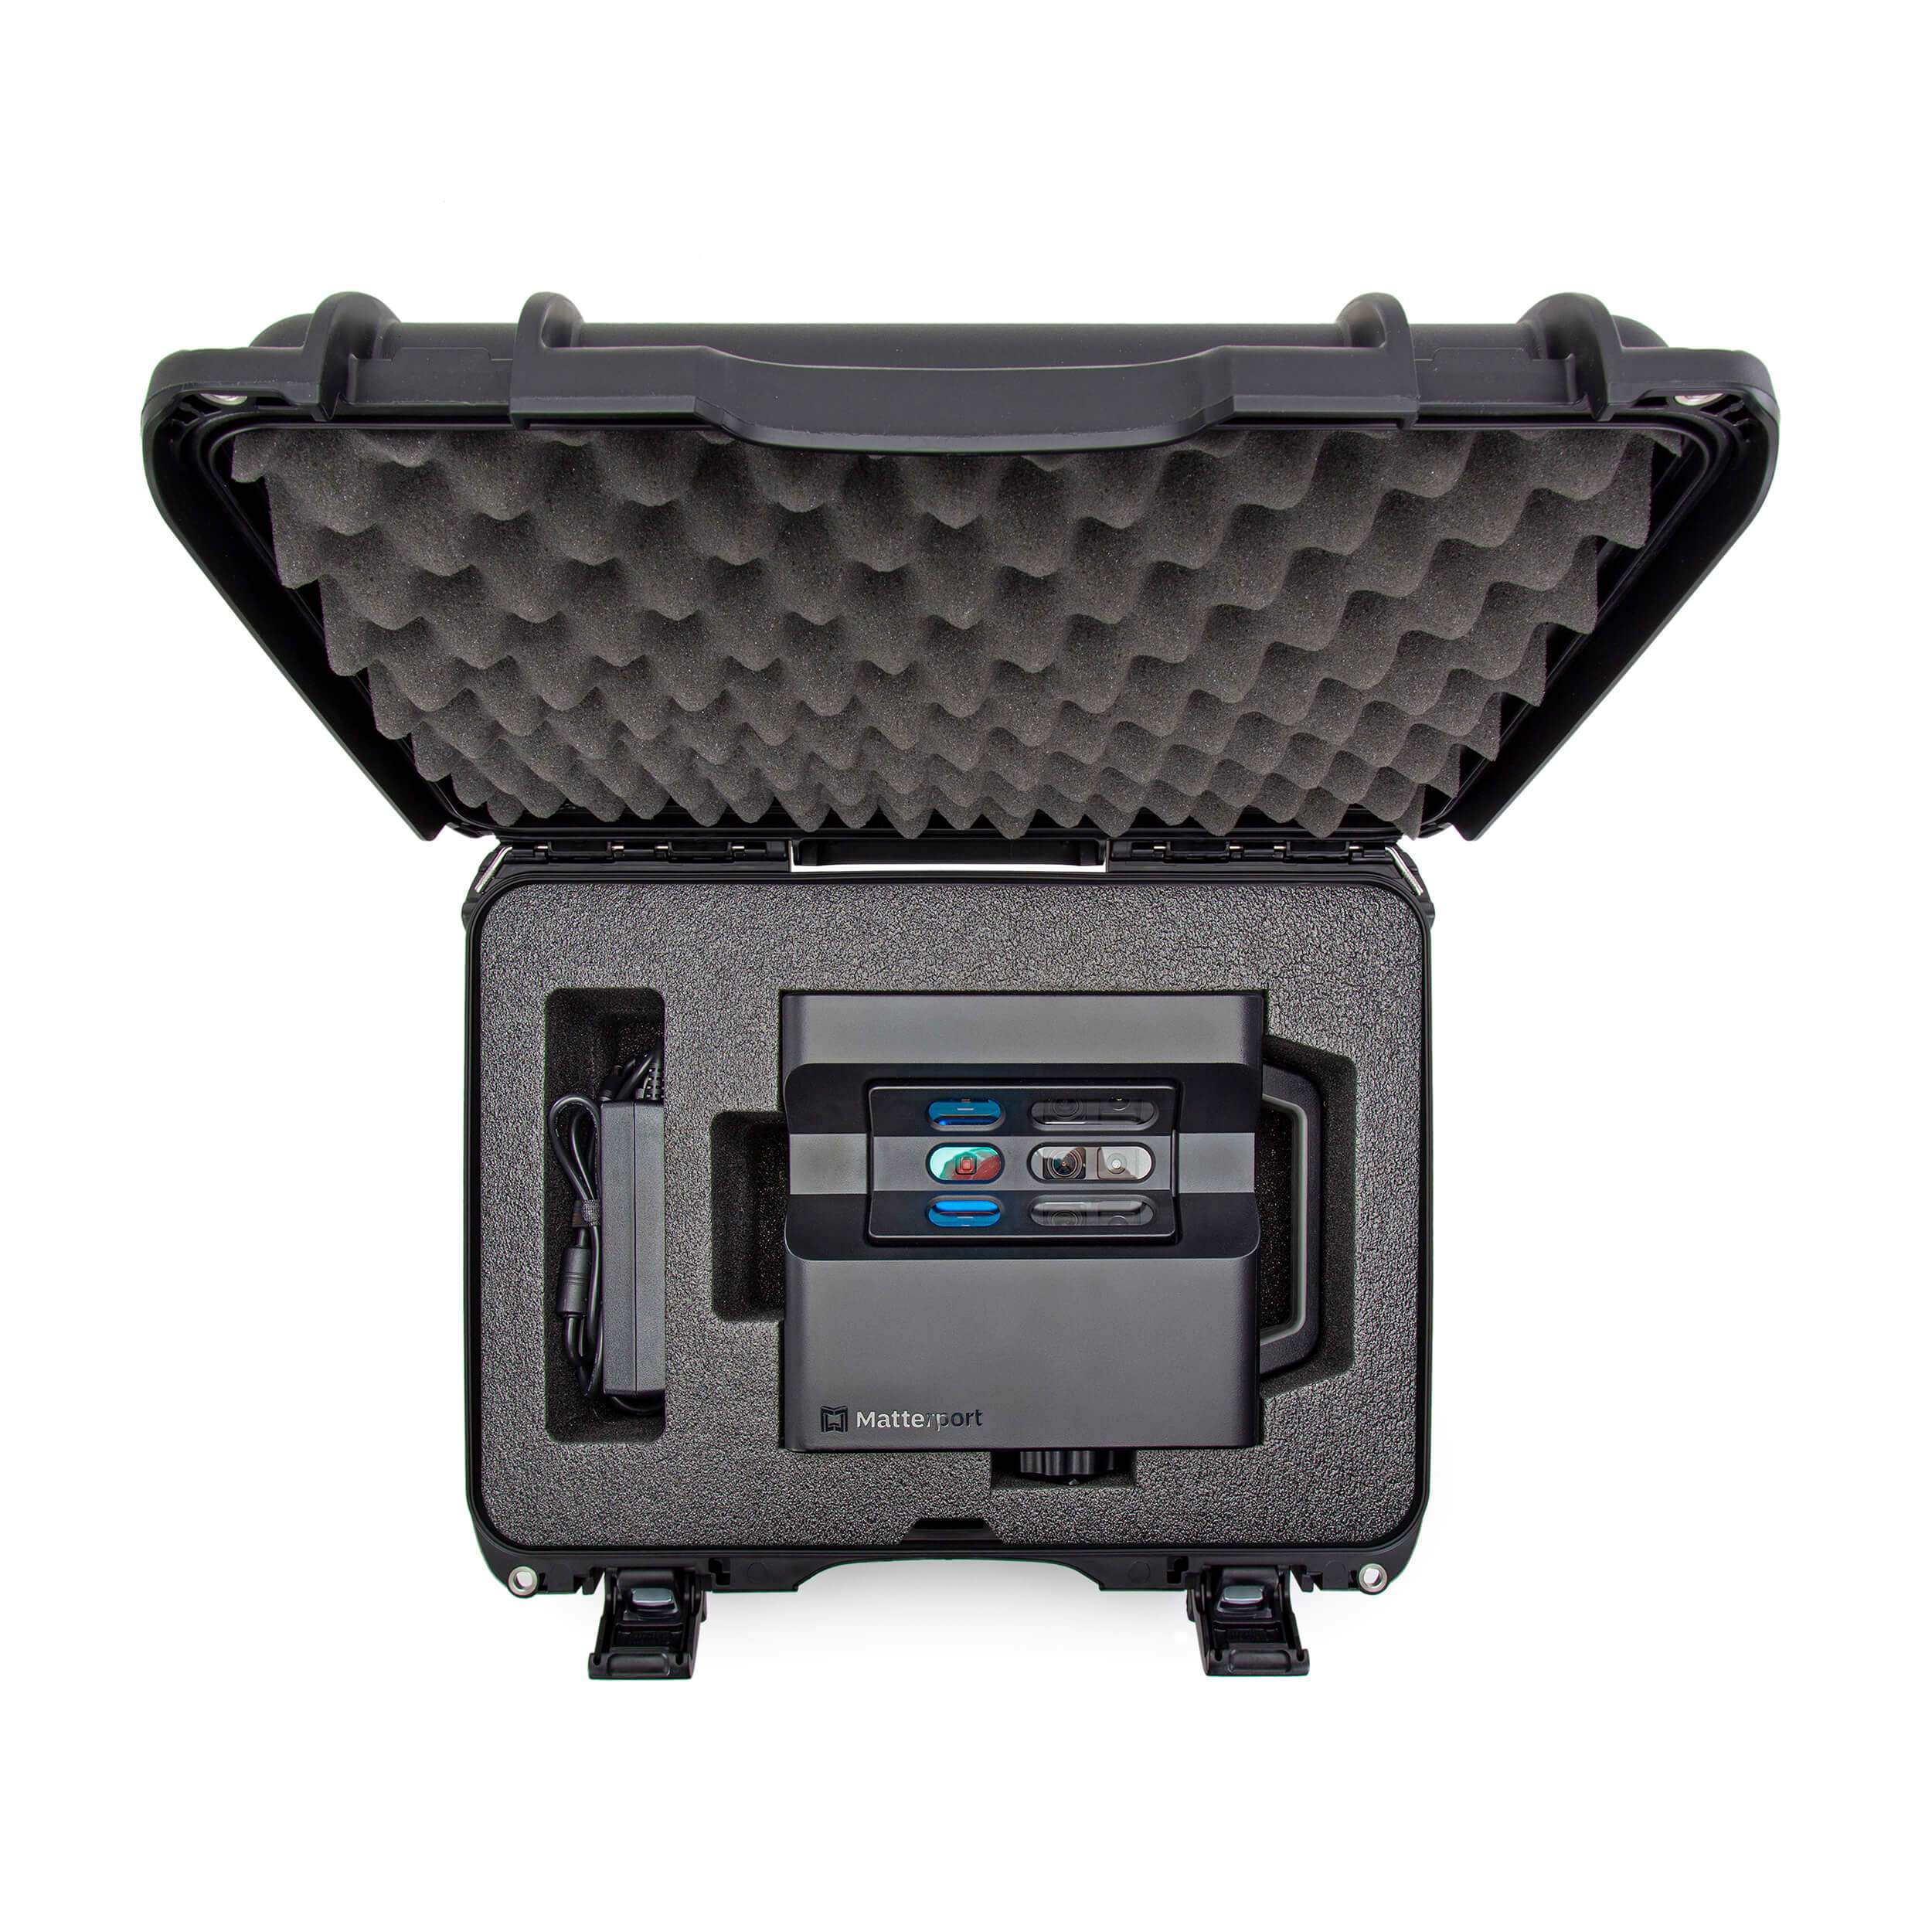 NANUK 925 pour la caméra 3D Matterport Pro1 ou Pro2-Caméra Valise-Noir-NANUK